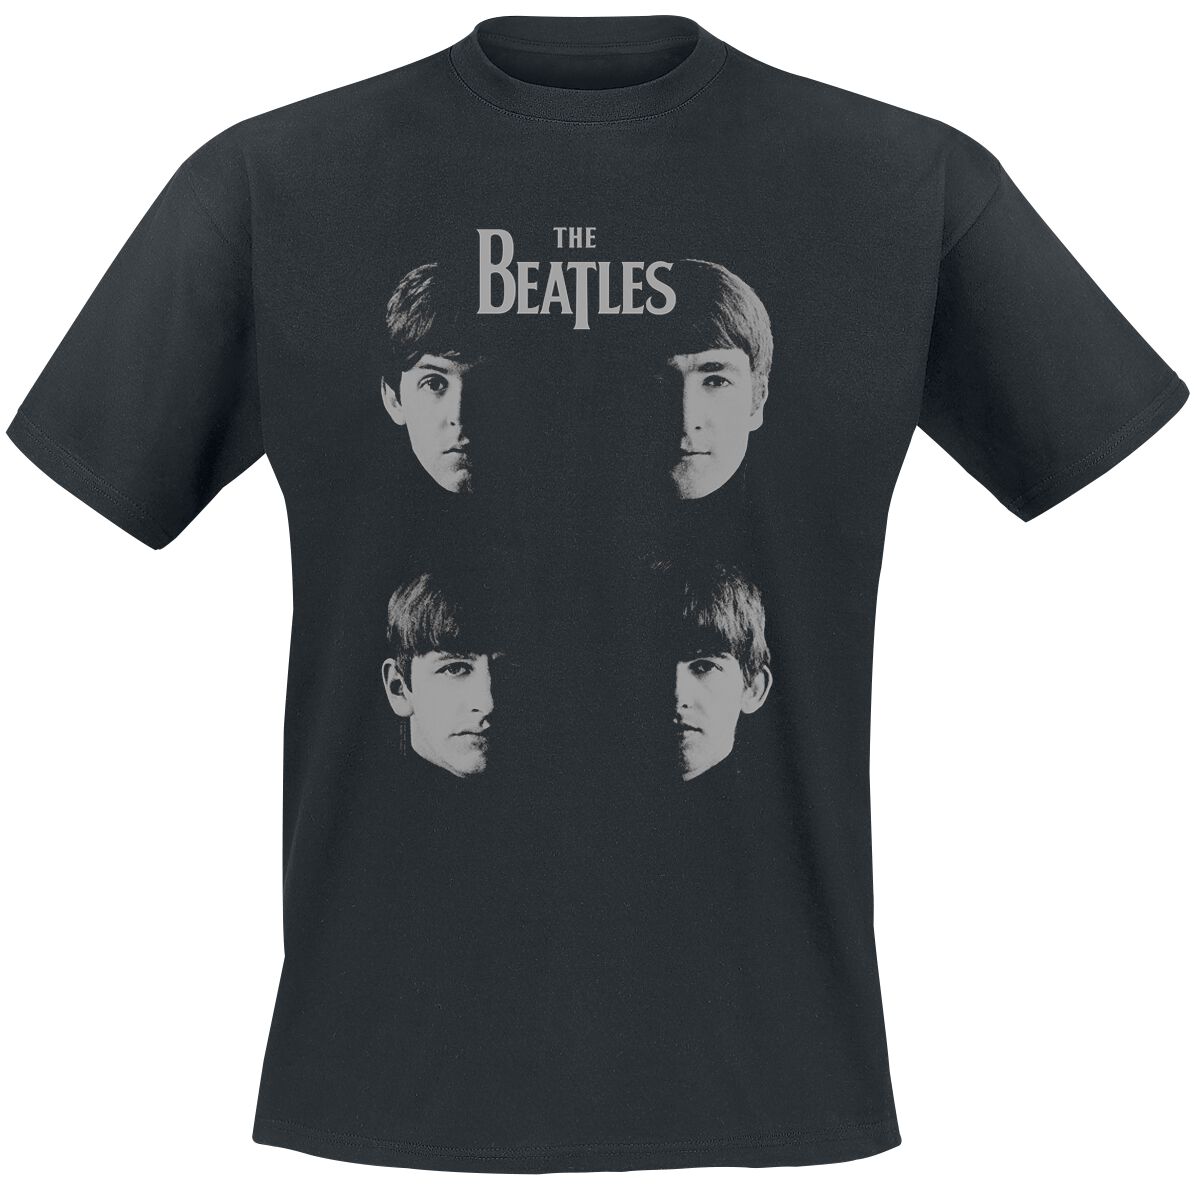 The Beatles T-Shirt - Shadow Faces - S bis 3XL - für Männer - Größe M - schwarz  - Lizenziertes Merchandise!